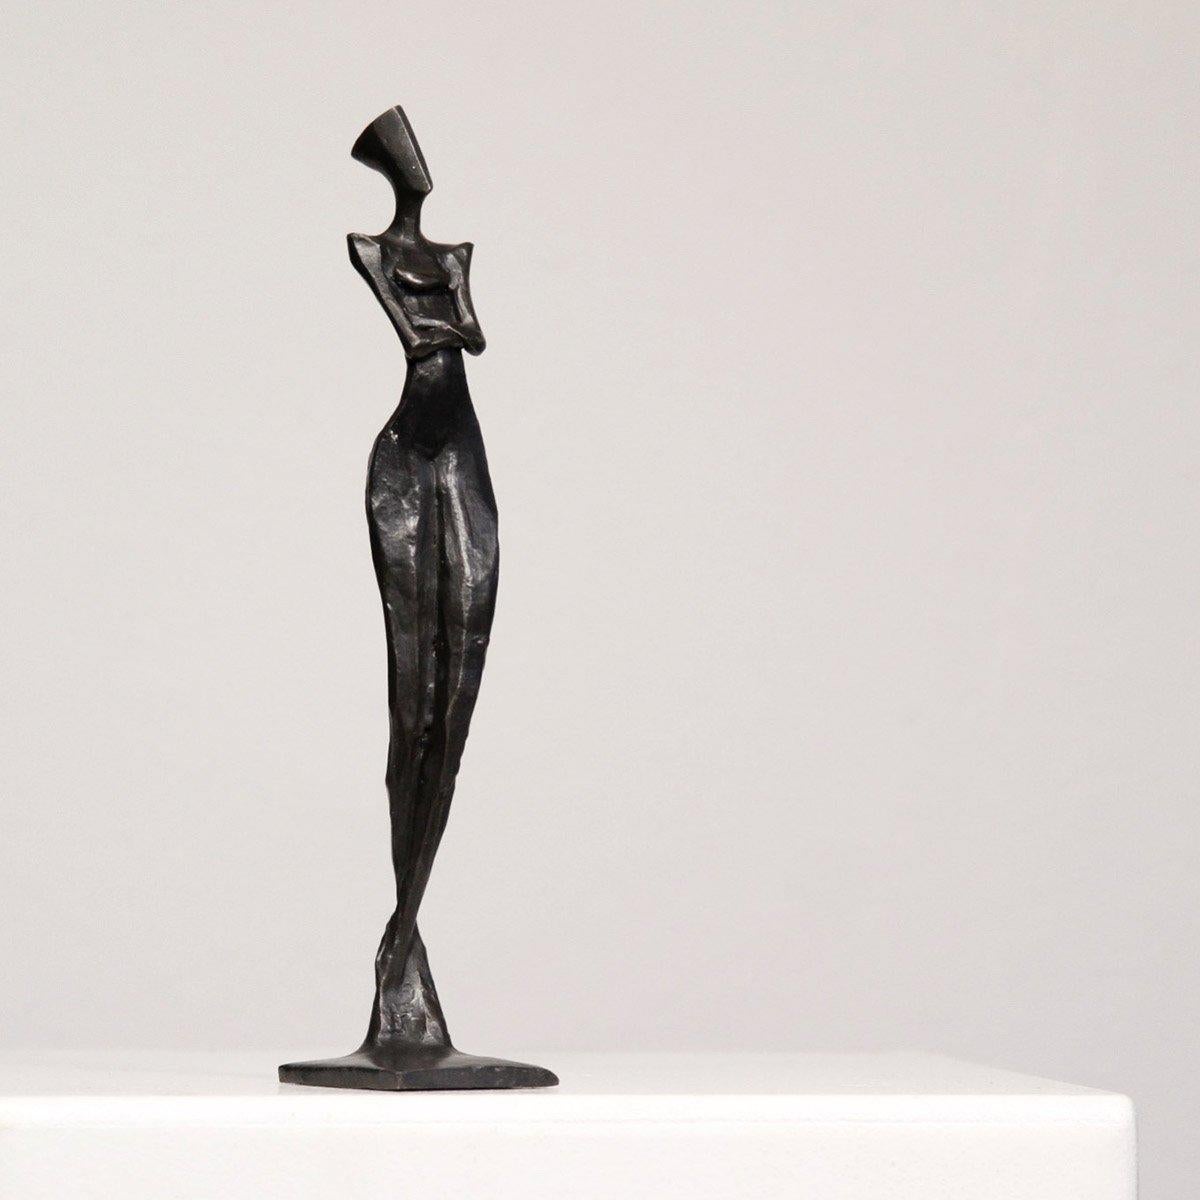 Lena von Nando Kallweit 
Elegante Bronzeskulptur der weiblichen Figur
Auflage von 25 Stück

Abmessungen: 20cm x 4cm x 5cm